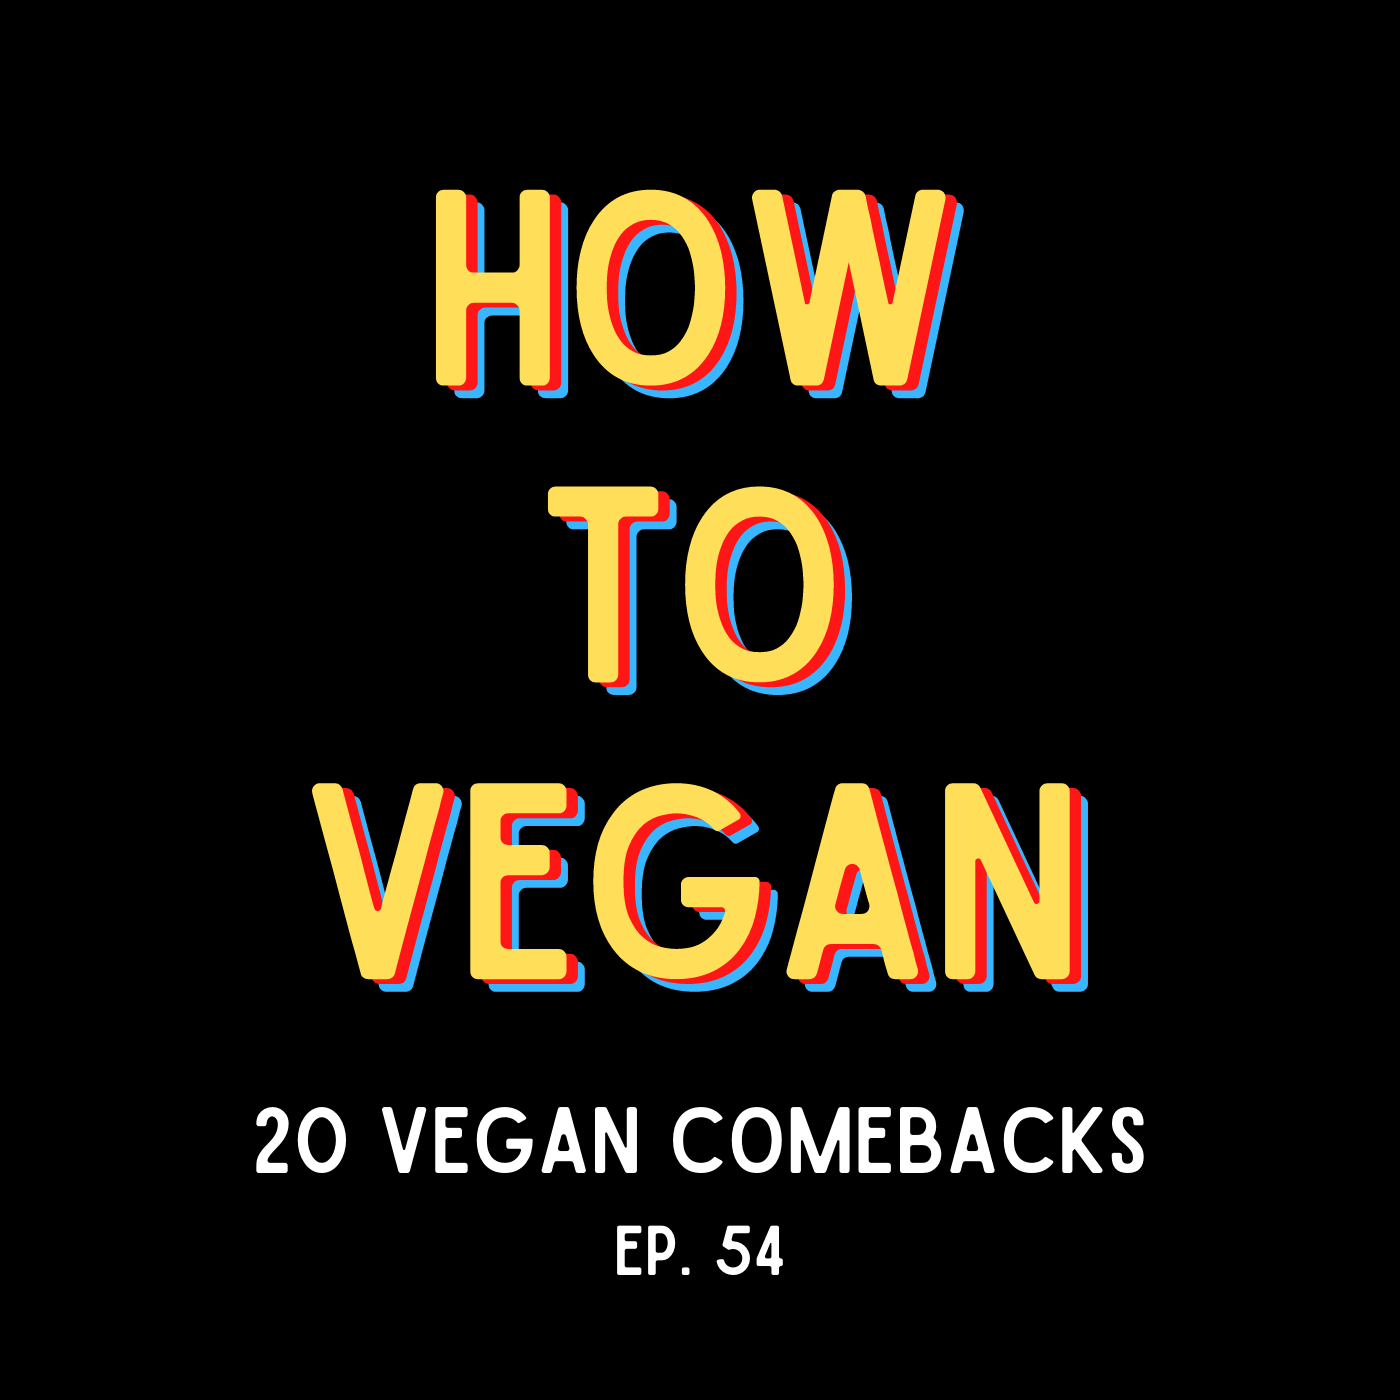 20 Vegan Comebacks